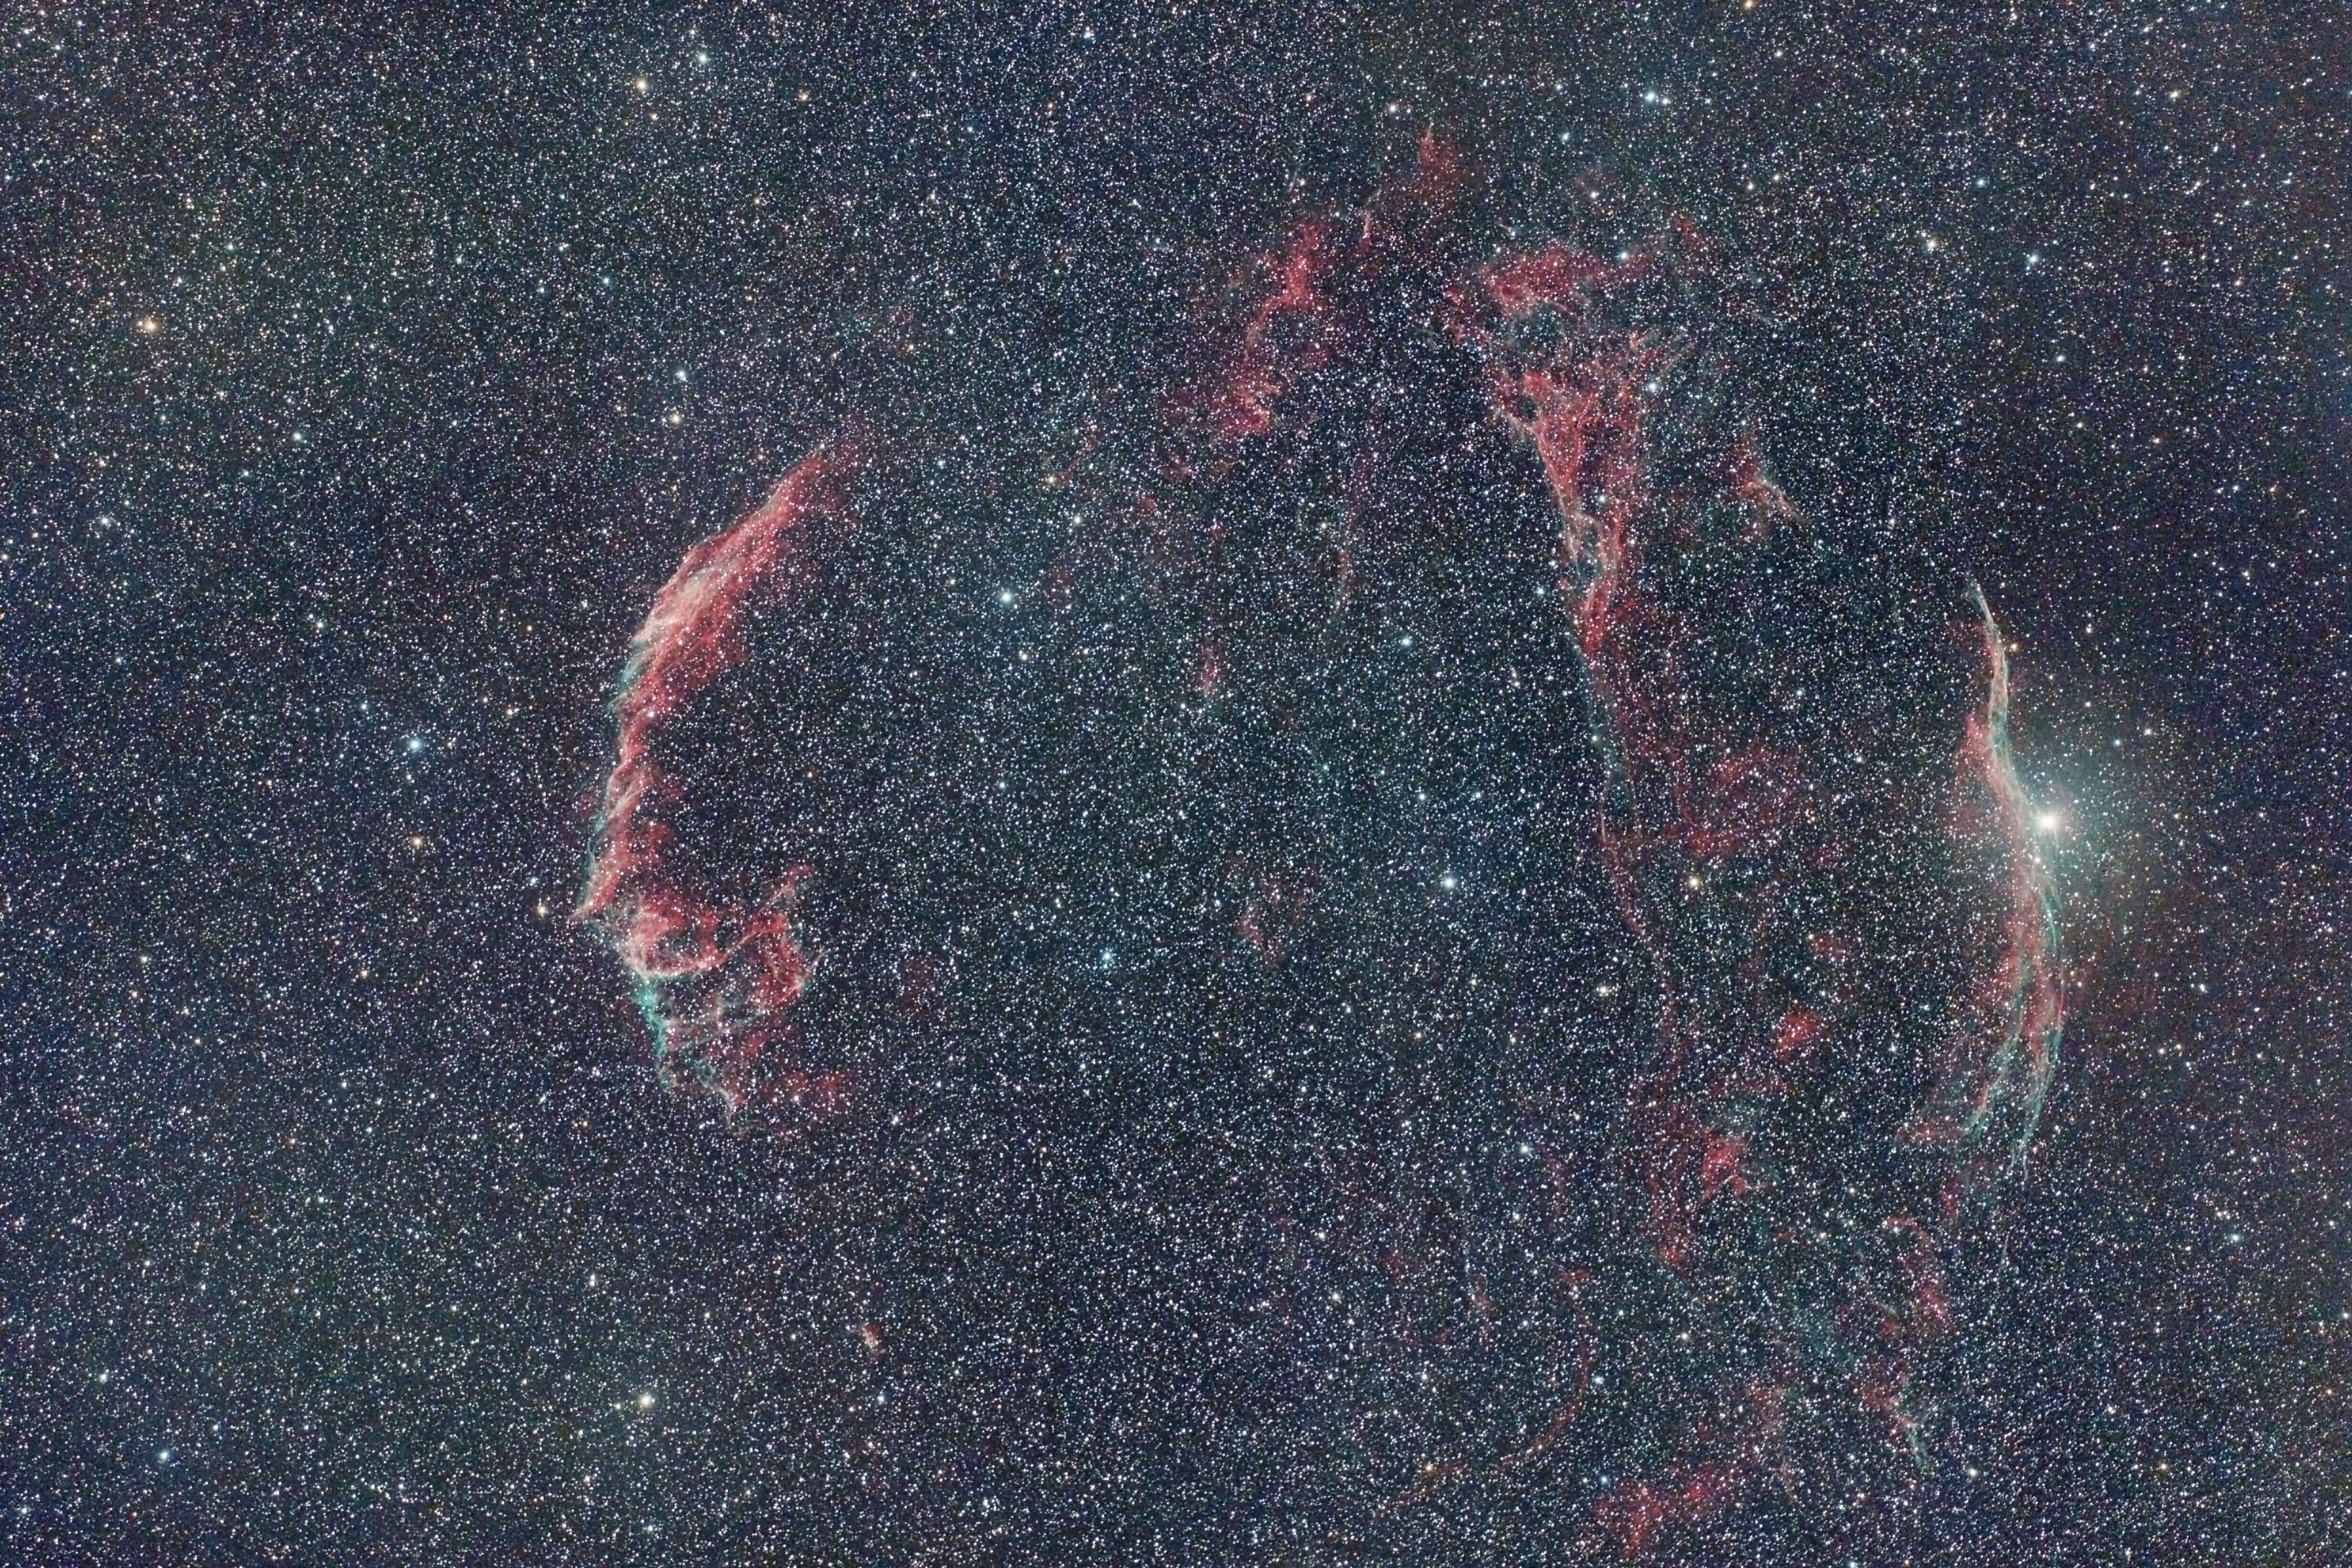 Veil Nebula 105-650 7704 D1 5DII 24x3mins ISO1600 multiple framing  C2.jpg